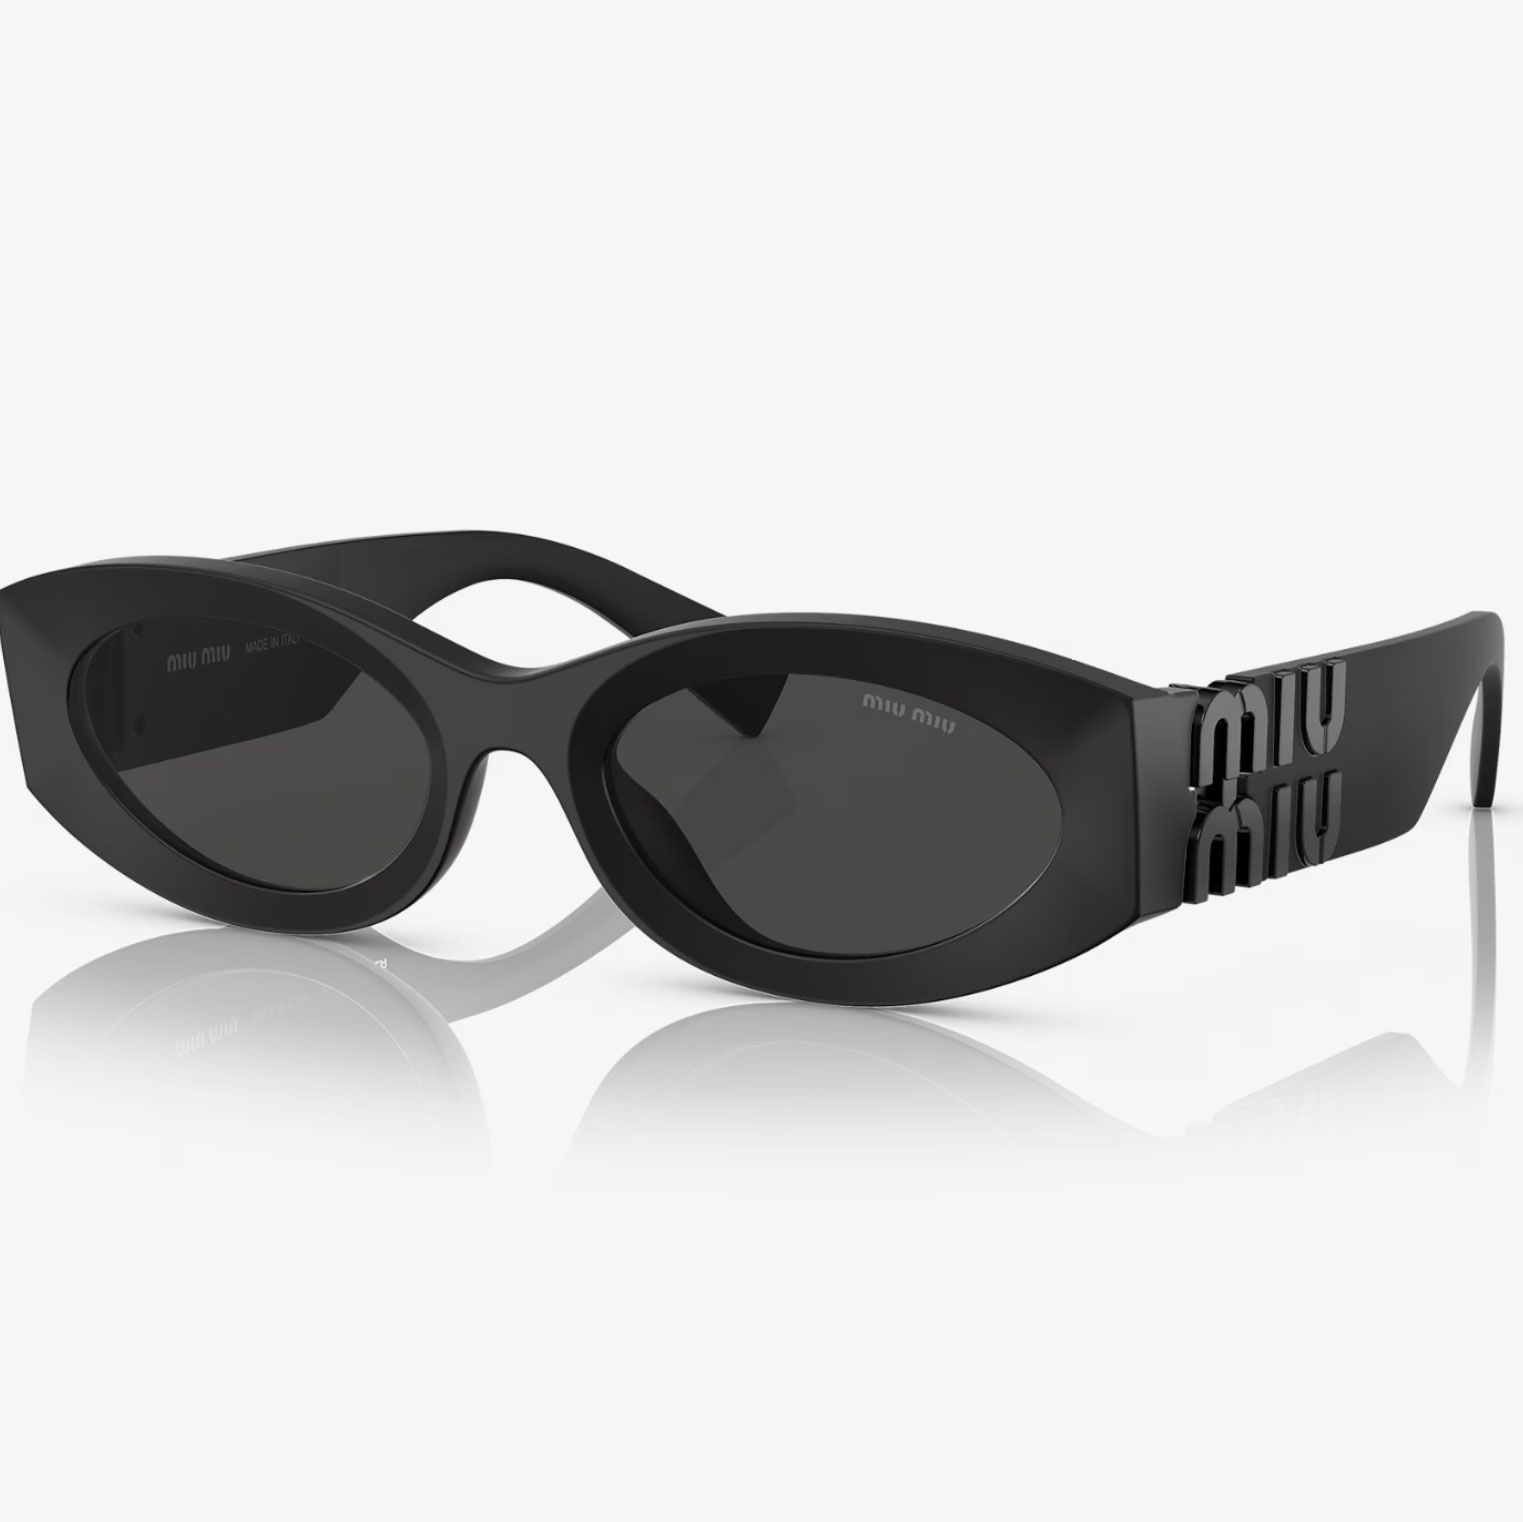 Men's Sunglasses - UP to 50% off Designer Sunglasses